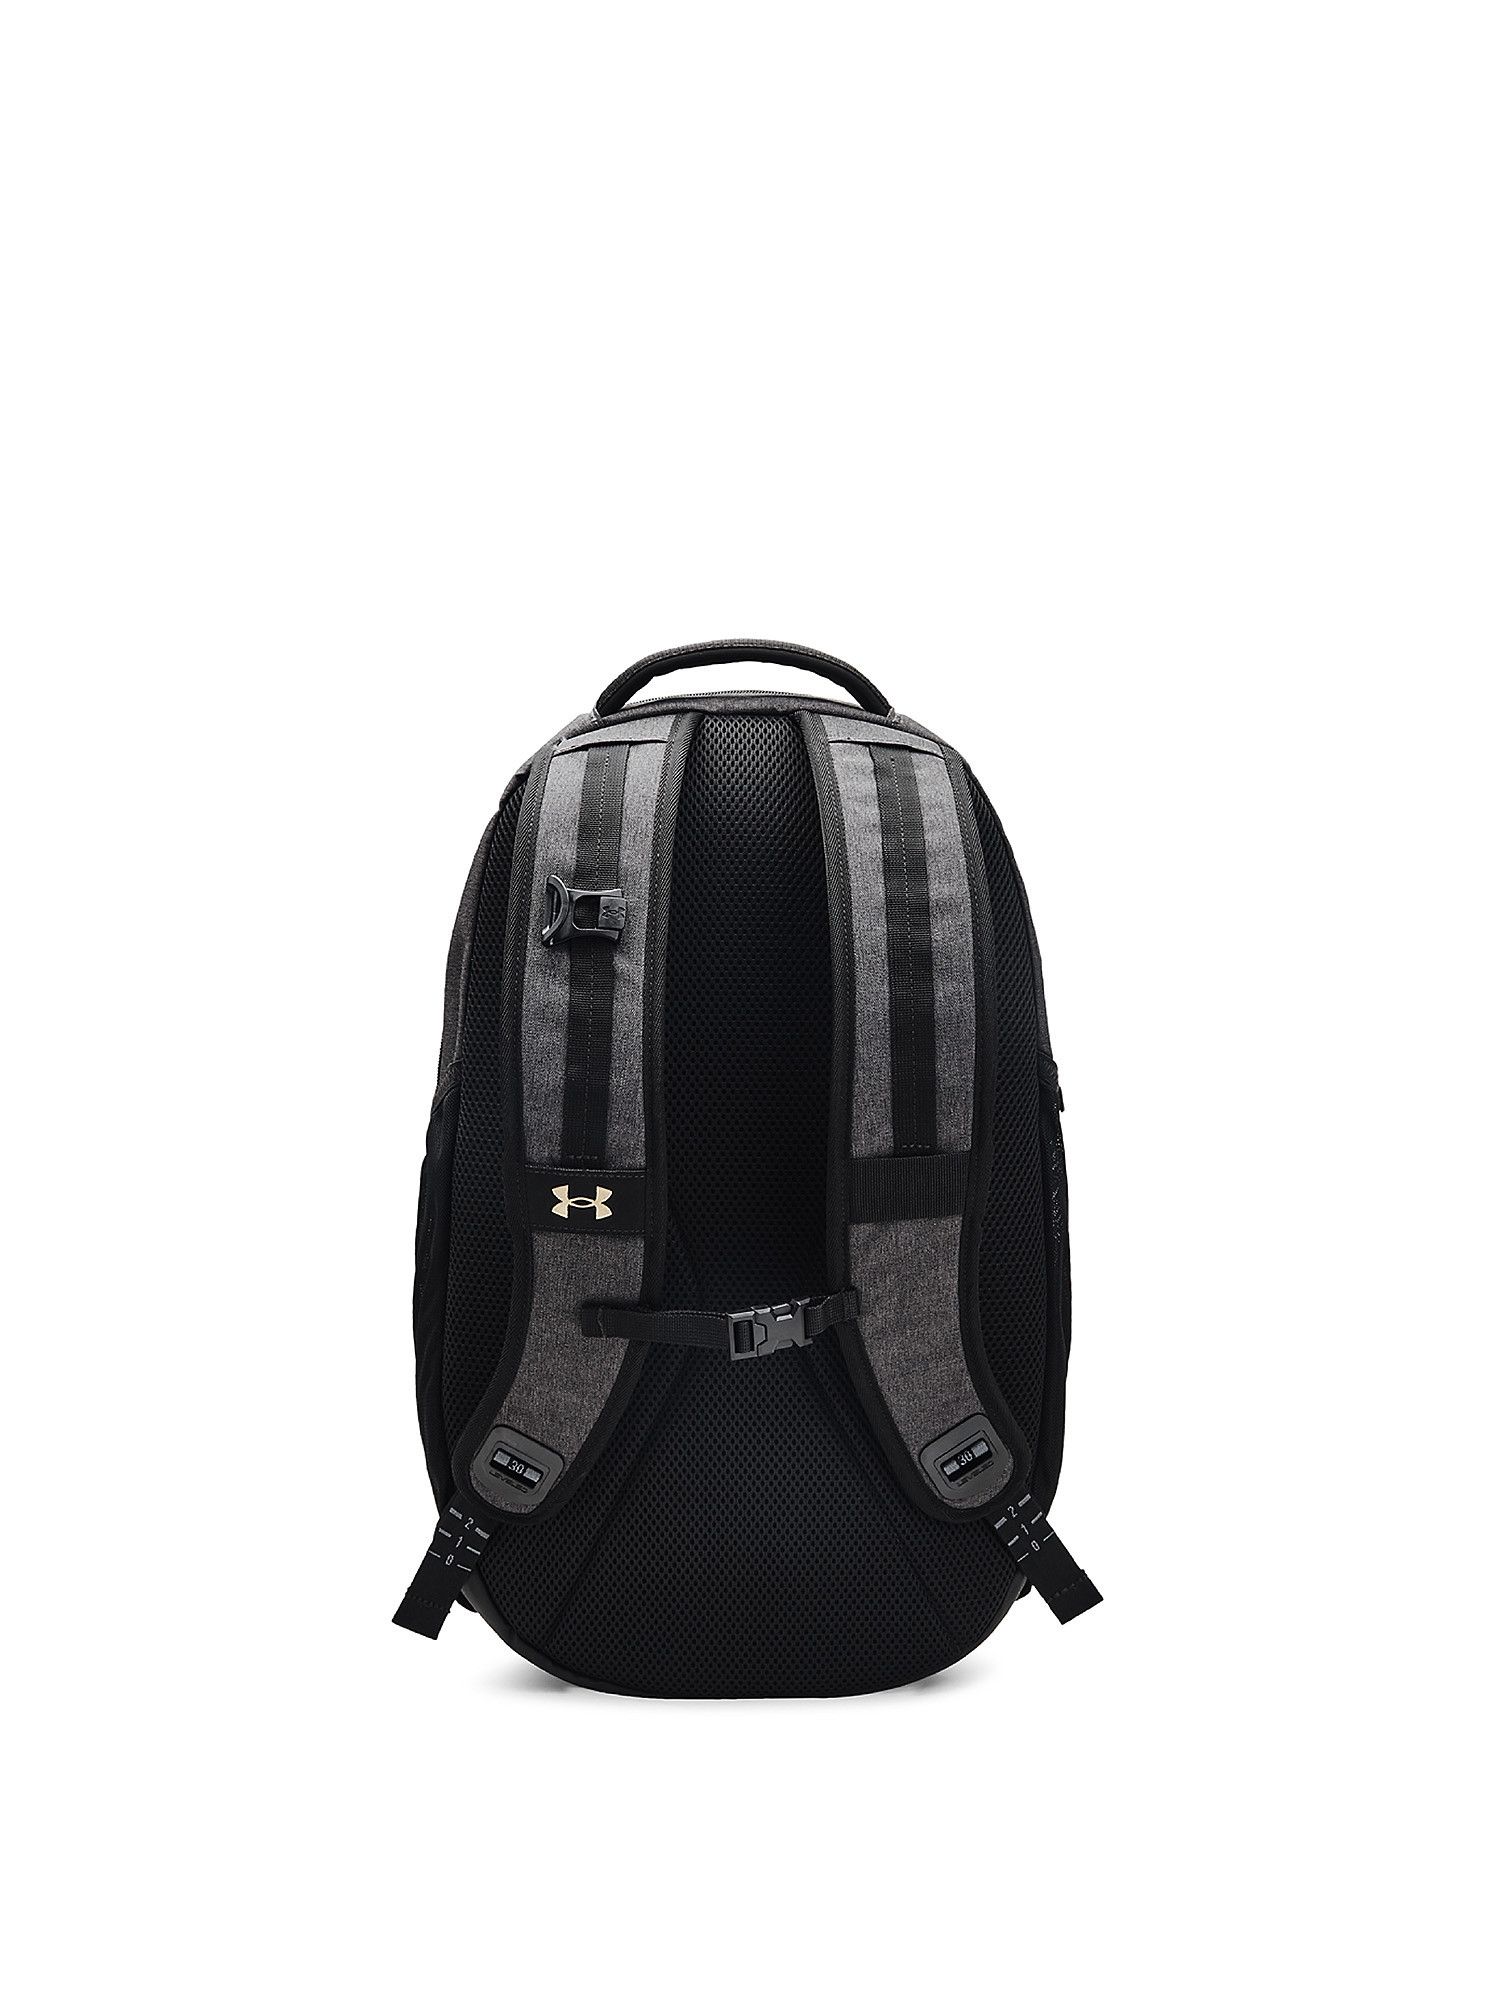 Under Armour - UA Hustle Pro Backpack, Black, large image number 1